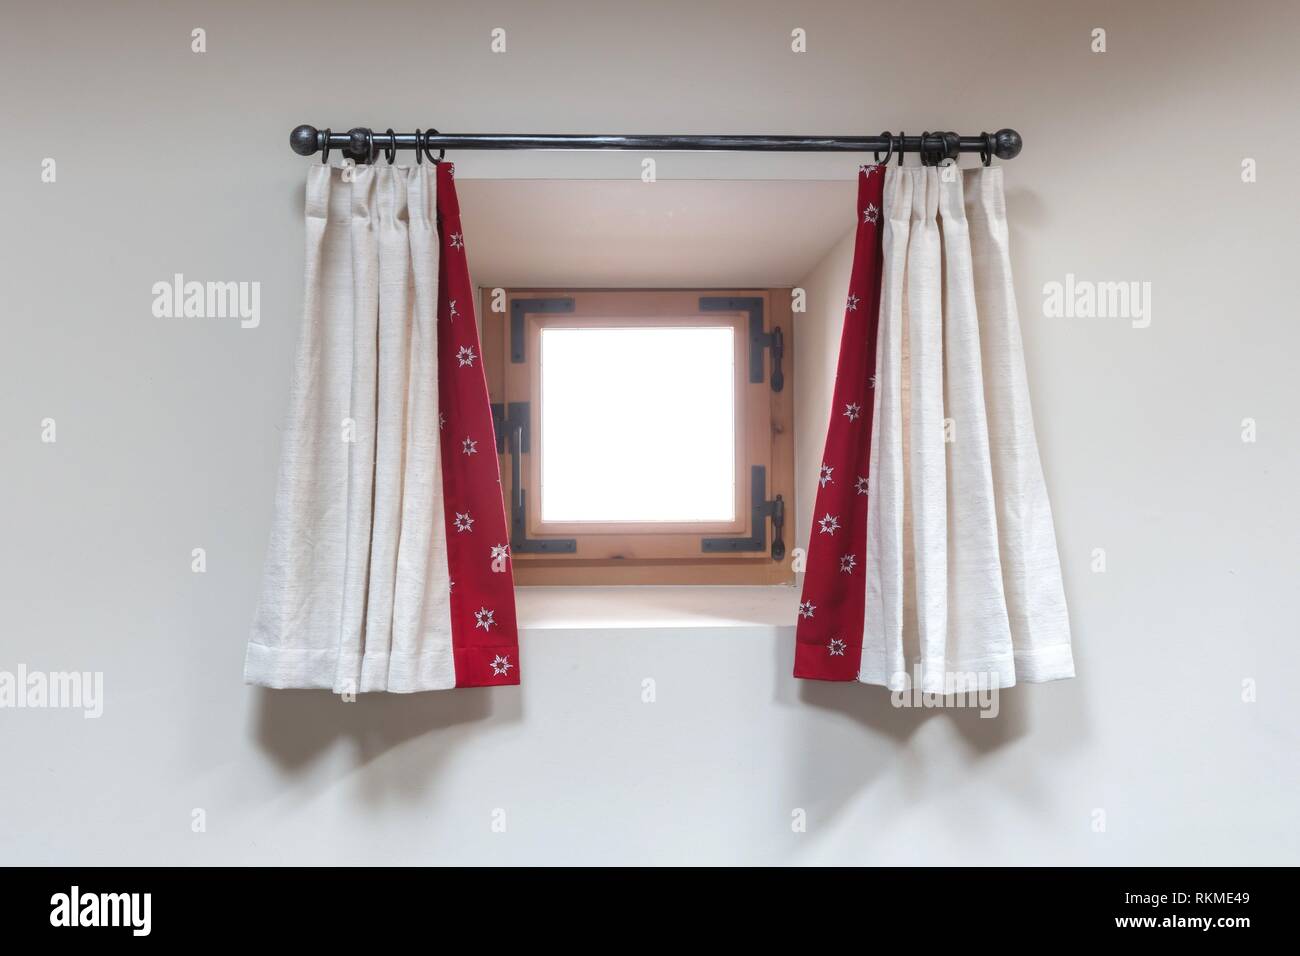 Haus innen - ein kleines Fenster mit Gardinen - Alpen Stockfotografie -  Alamy